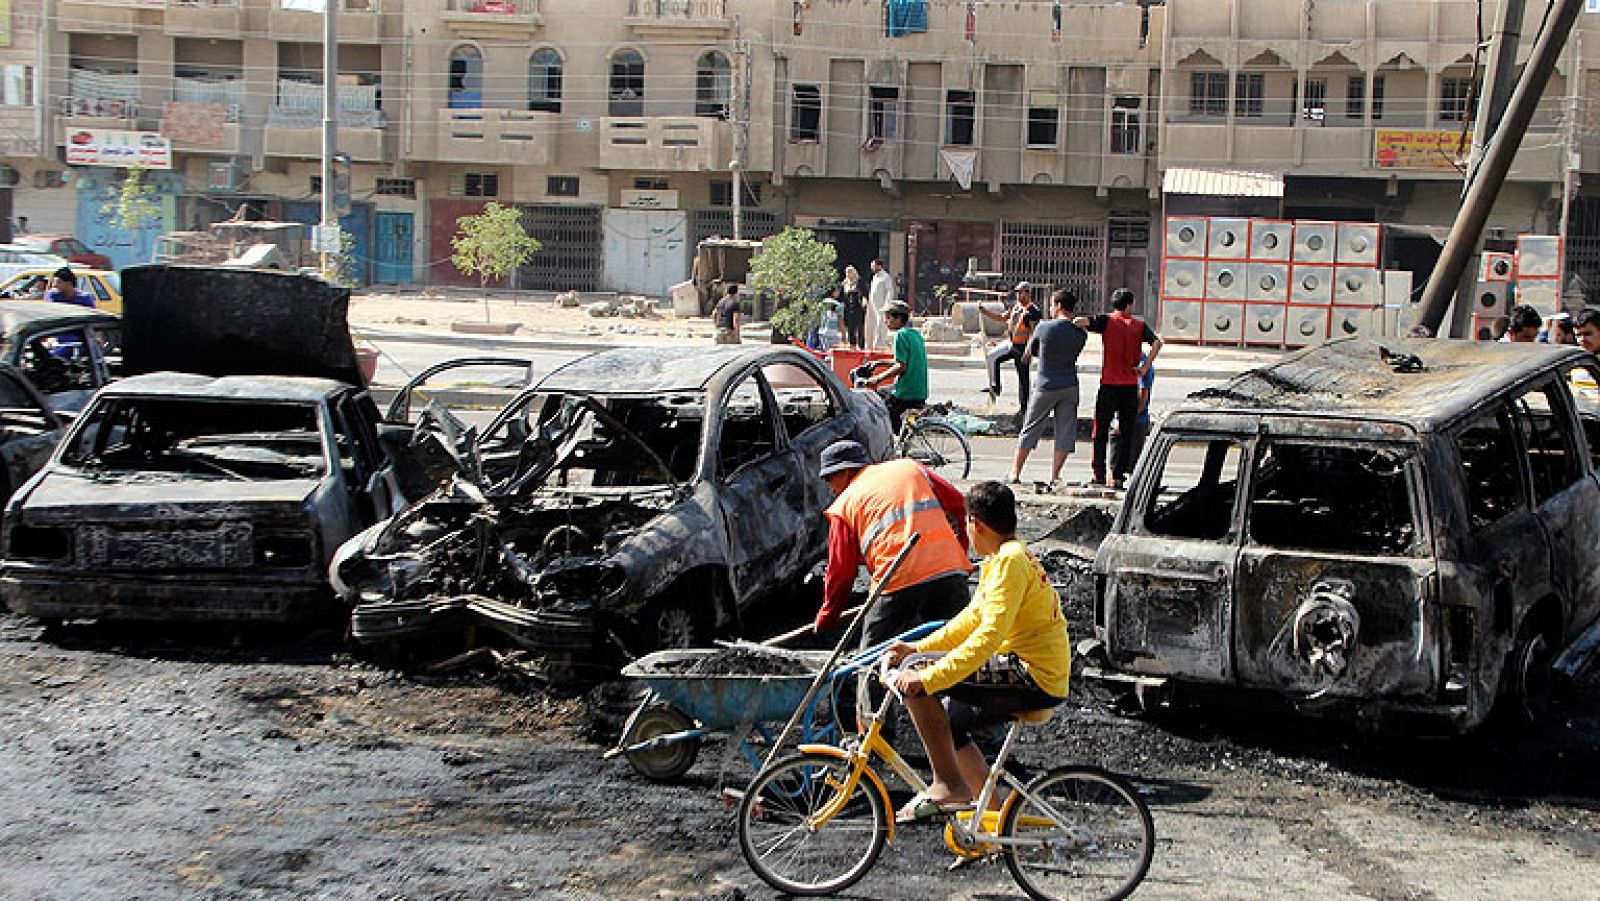 Al menos 30 personas han muerto este domingo y otras 88 resultaron heridas en una cadena de atentados perpetrados con coches bomba en distintos puntos de Bagdad, informa a Efe una fuente de la policía.